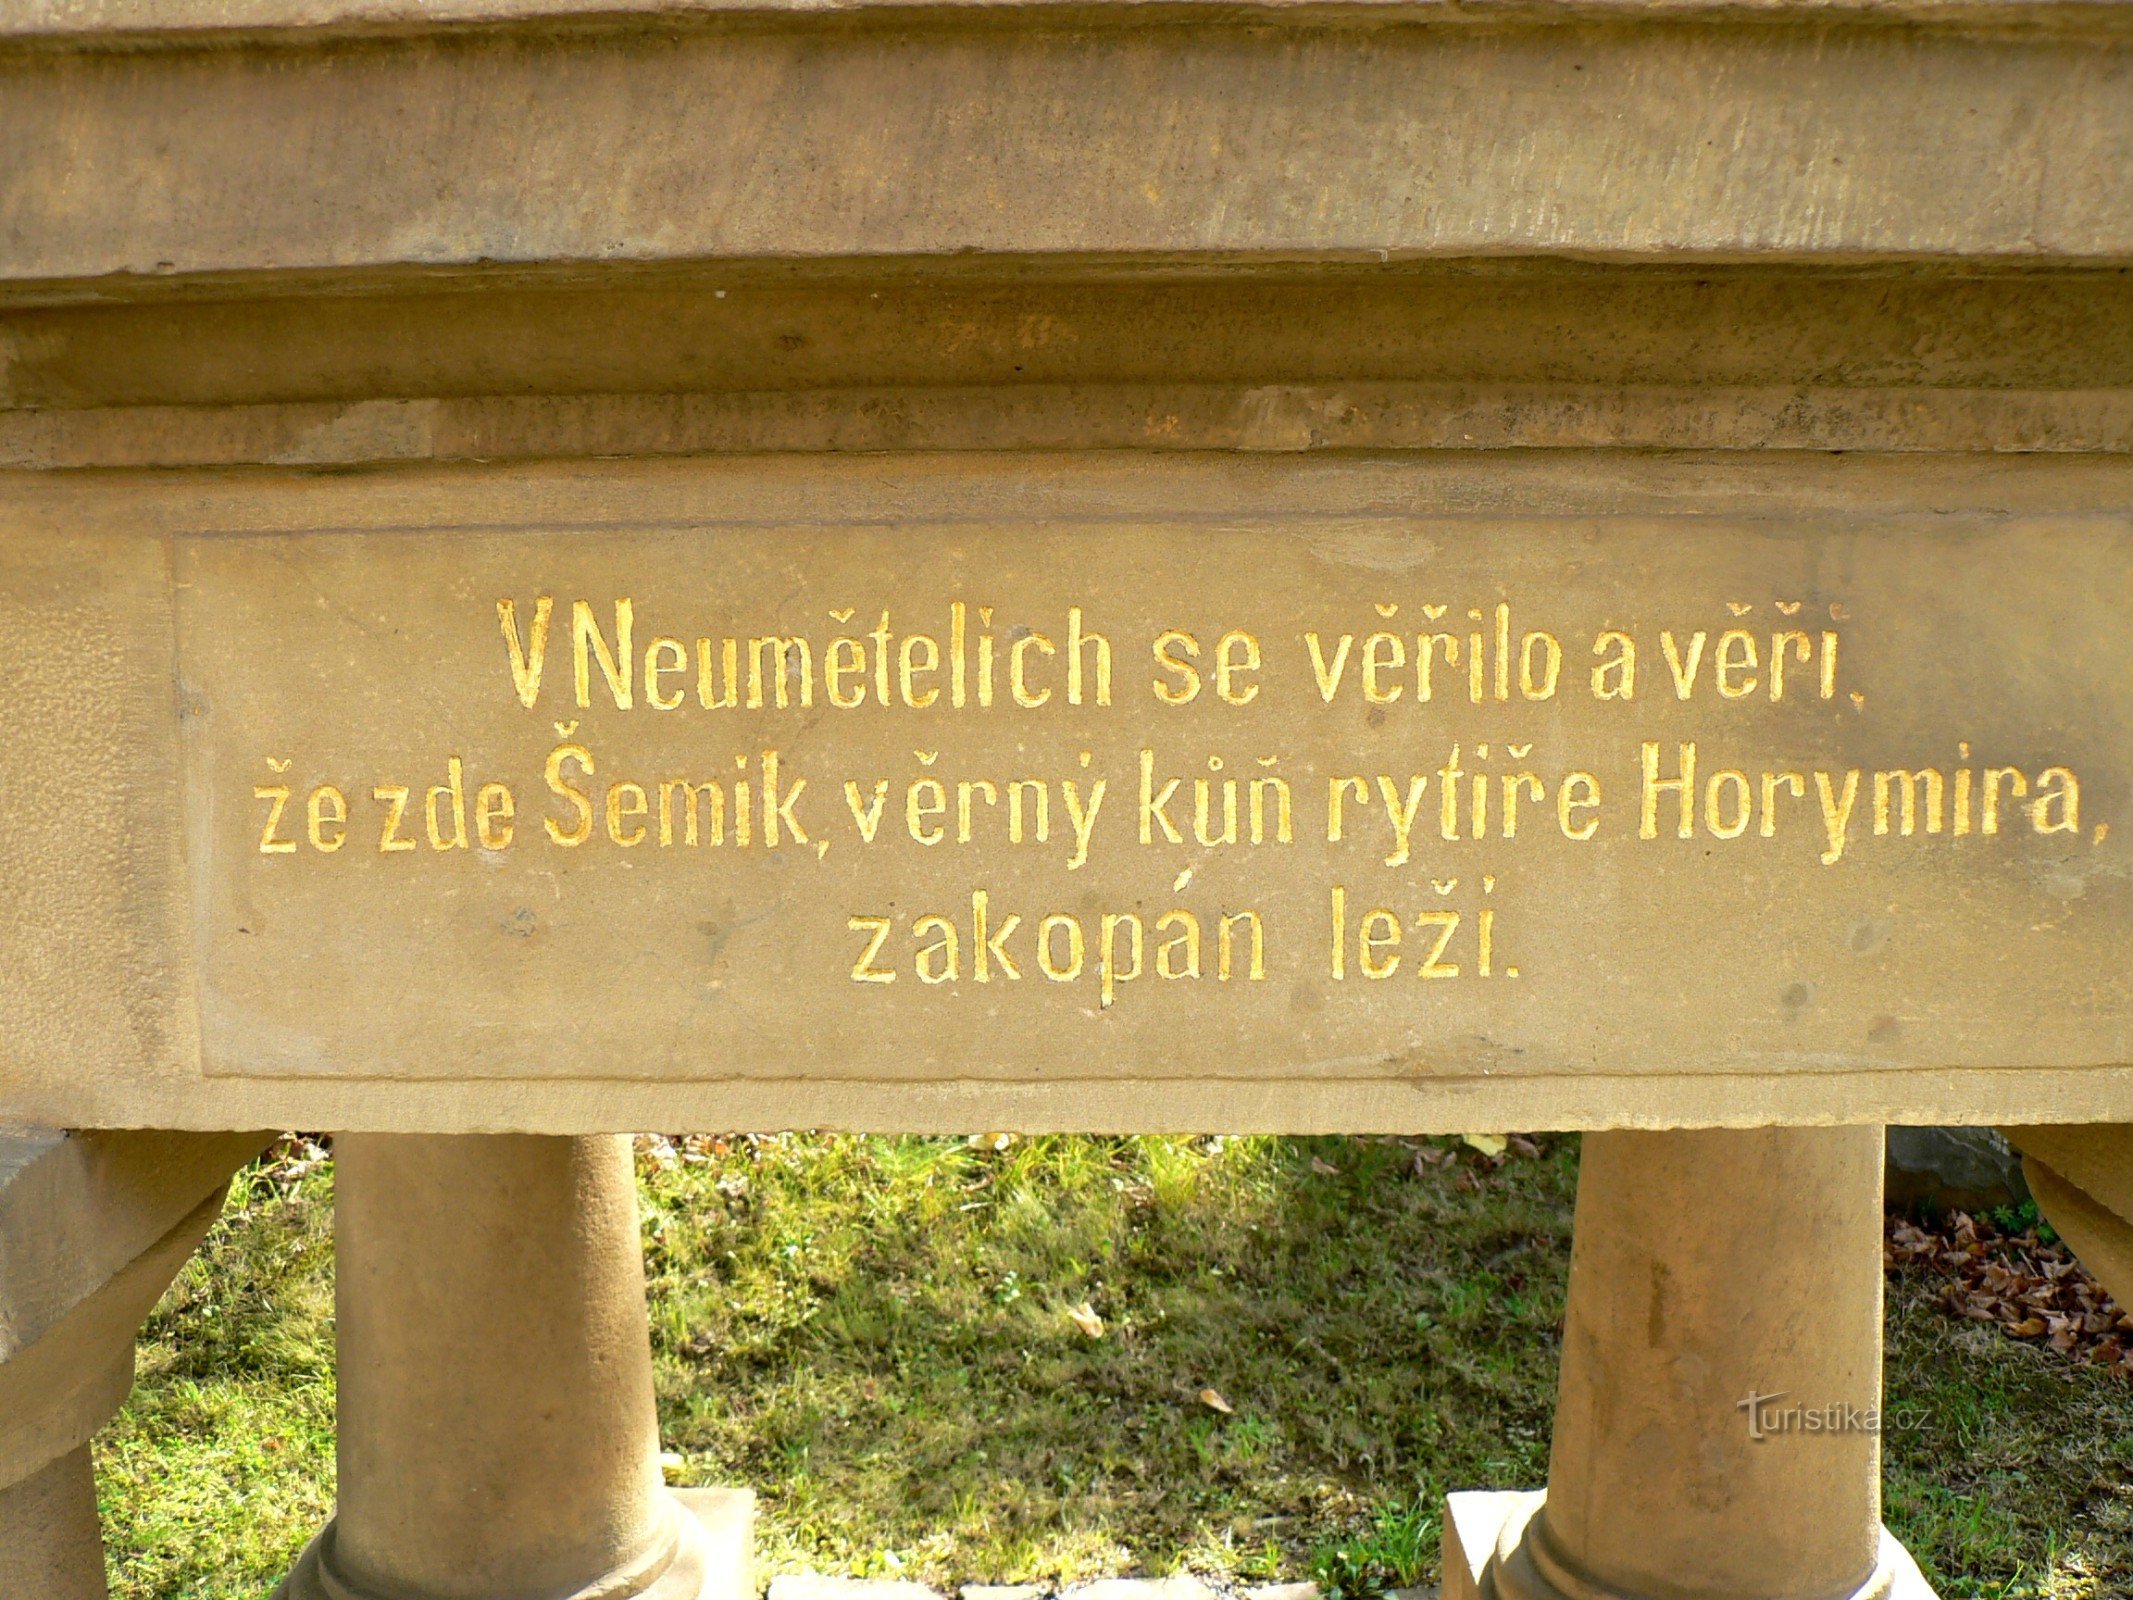 Neumetely - la tombe du légendaire Šemík